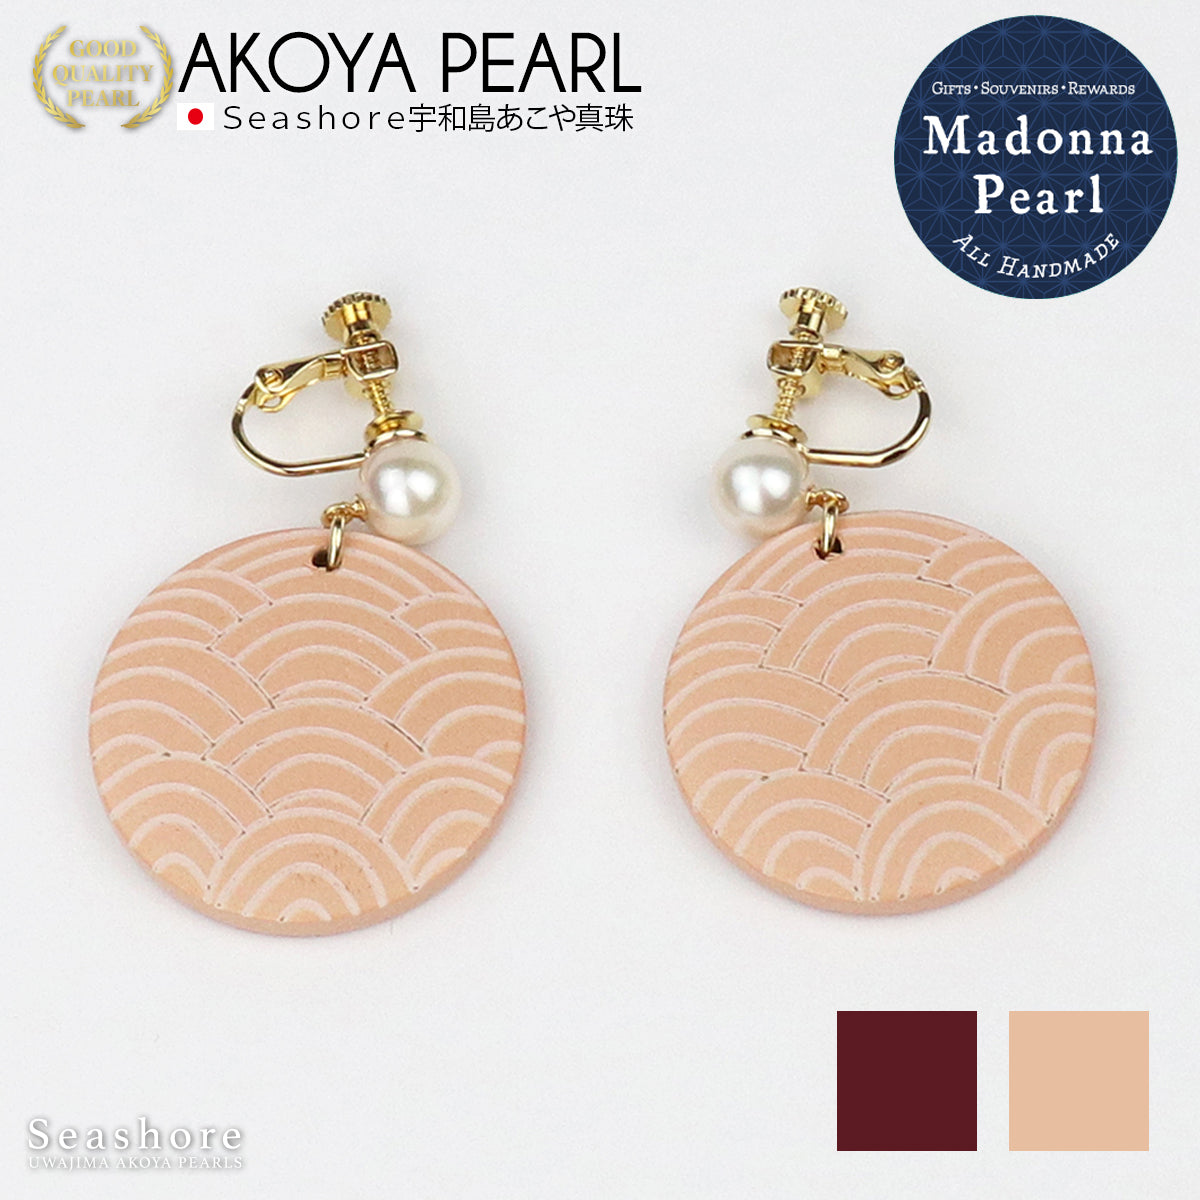 【Madonna Pearl】 あこや真珠 ピアス イヤリング 和柄 ウッド 木製 薄桃色 臙脂色 ピンク 赤 アコヤ パール